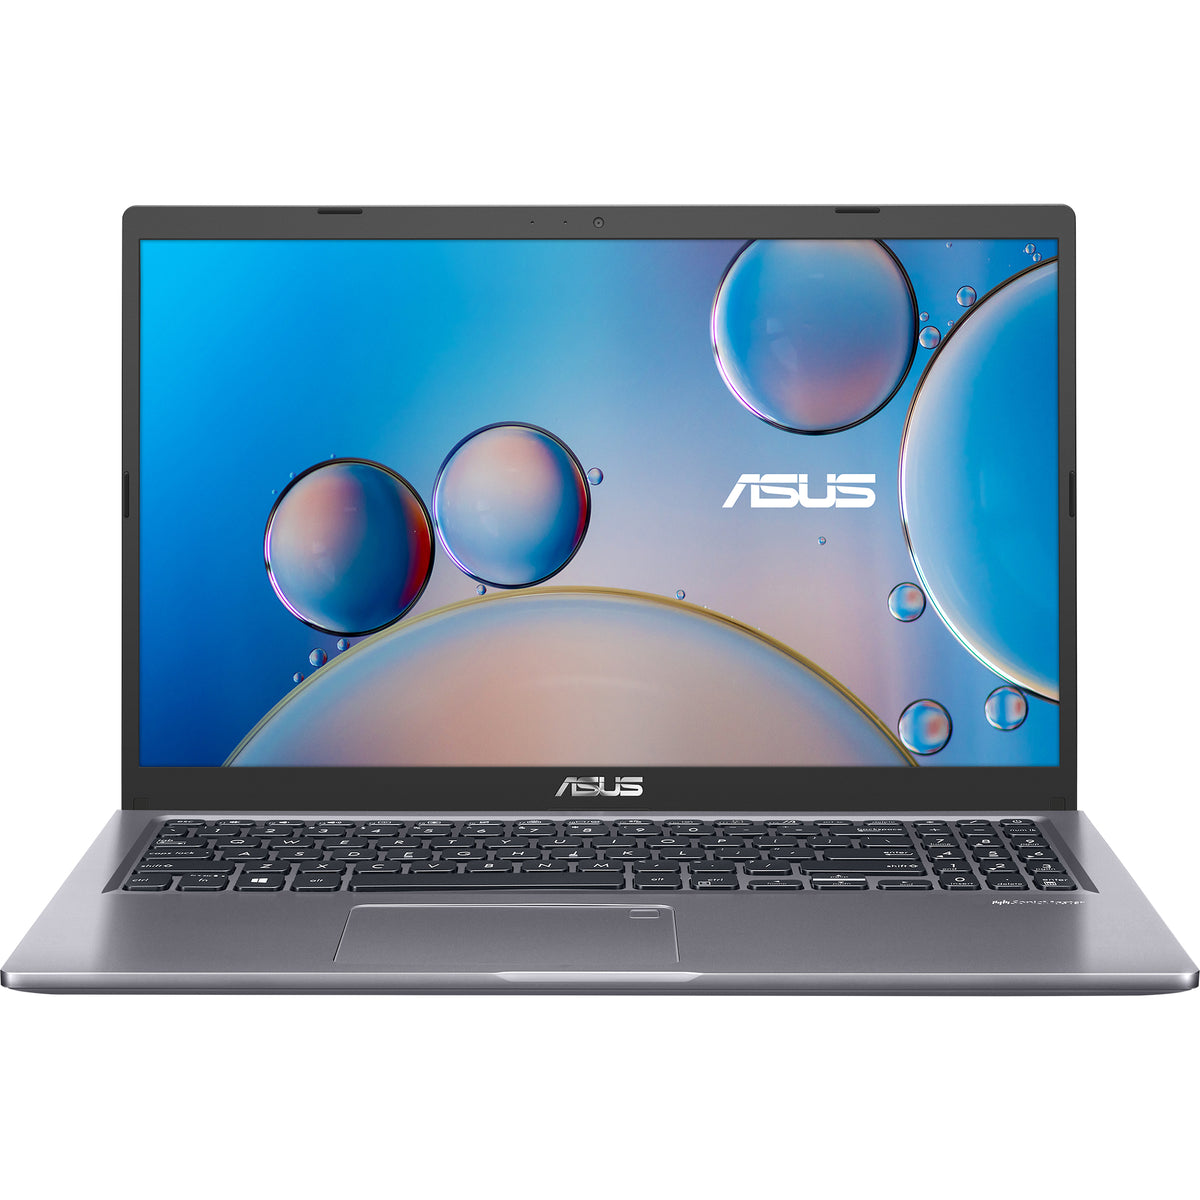 NB ASUS Laptop M515DA - R5 3500U 8GB 256GB SSD 15.6P FHD Radeon Vega 8 Graphics S/OS 3Yr - Plata